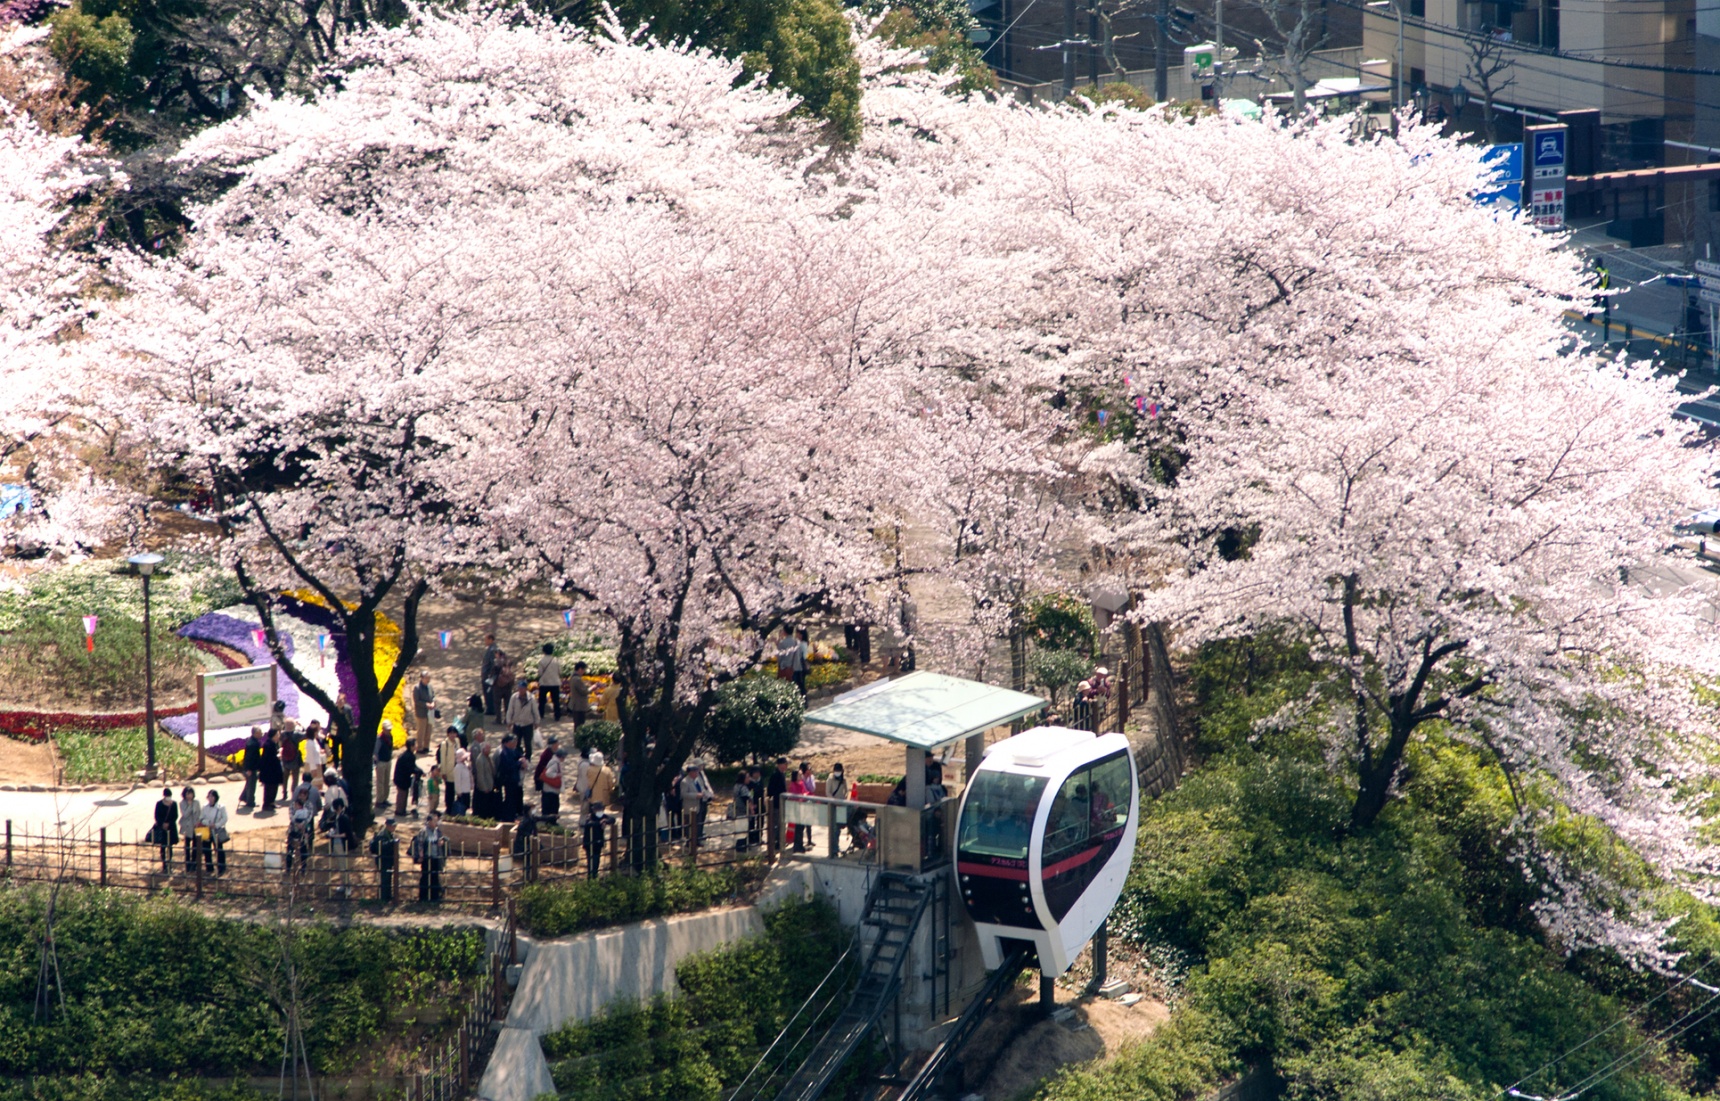 แนะนำ 7 สถานที่ท่องเที่ยวเข้าฟรีในโตเกียว